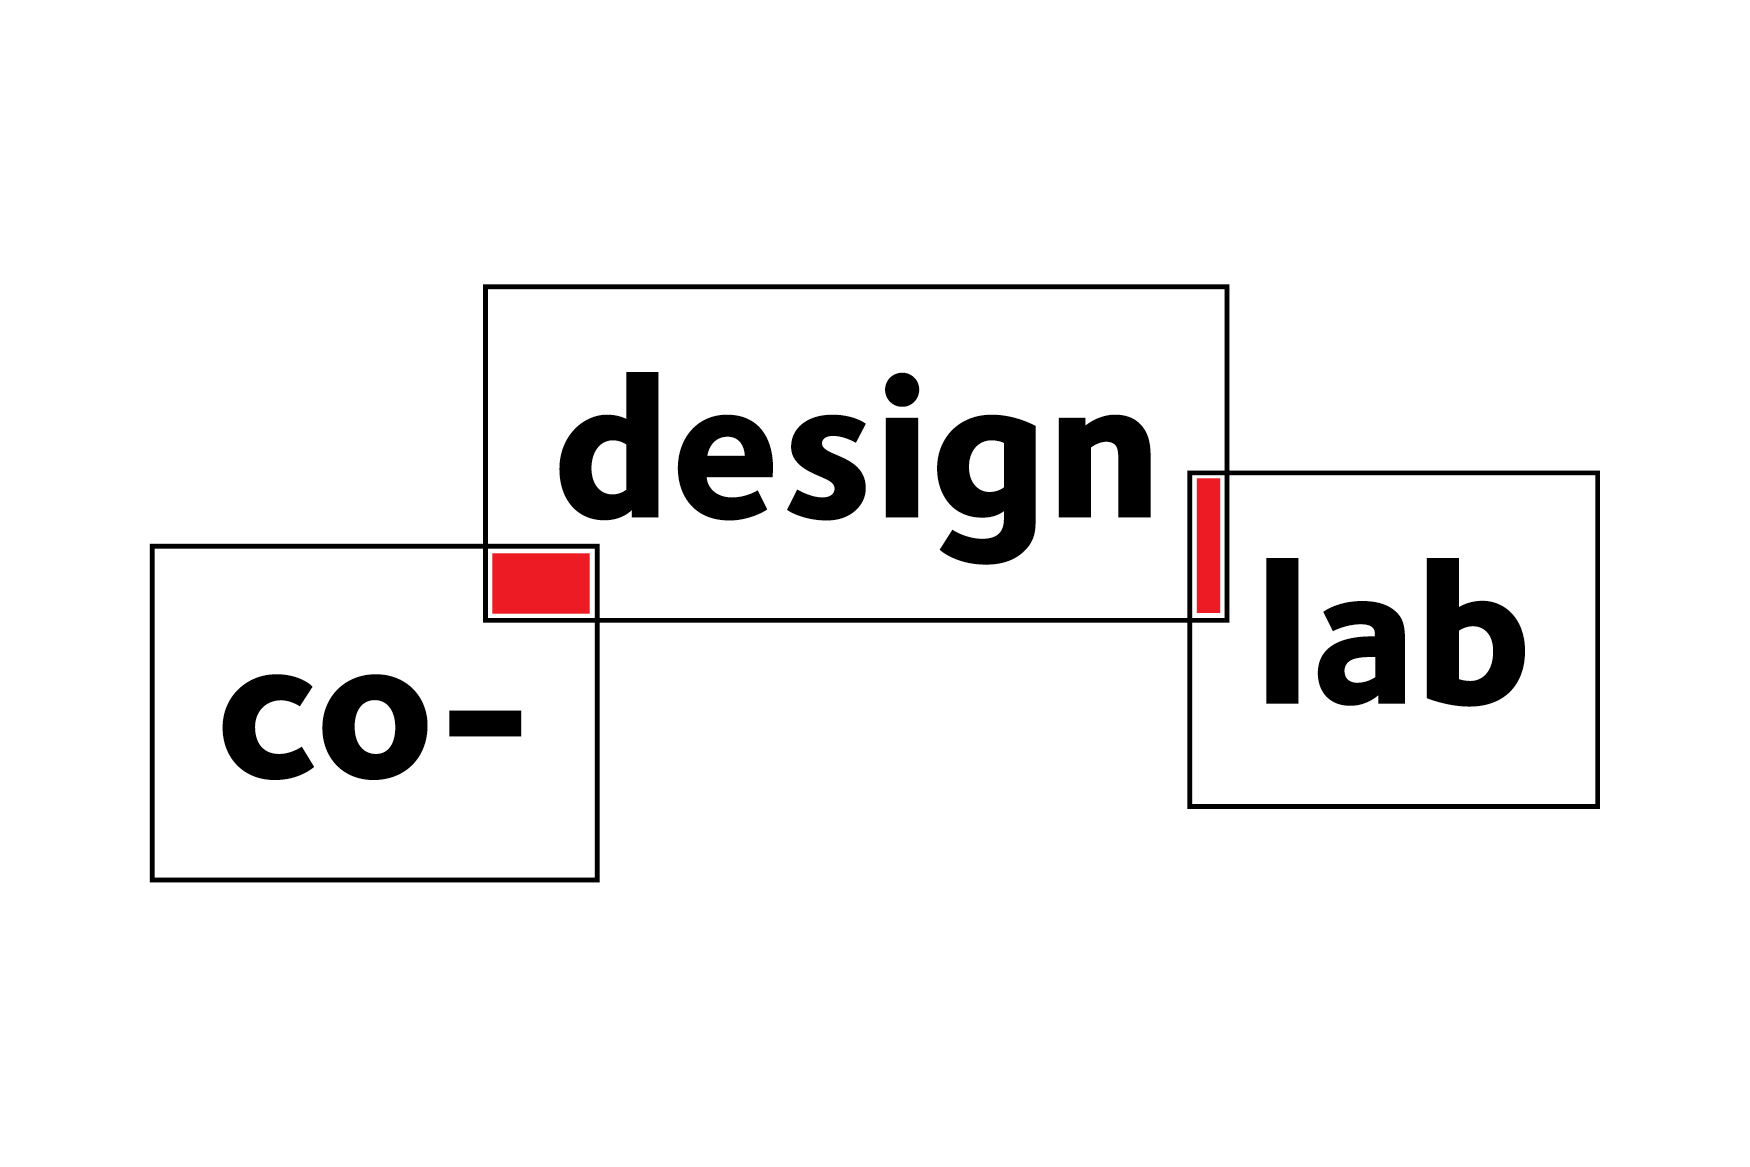 Co-Design Lab